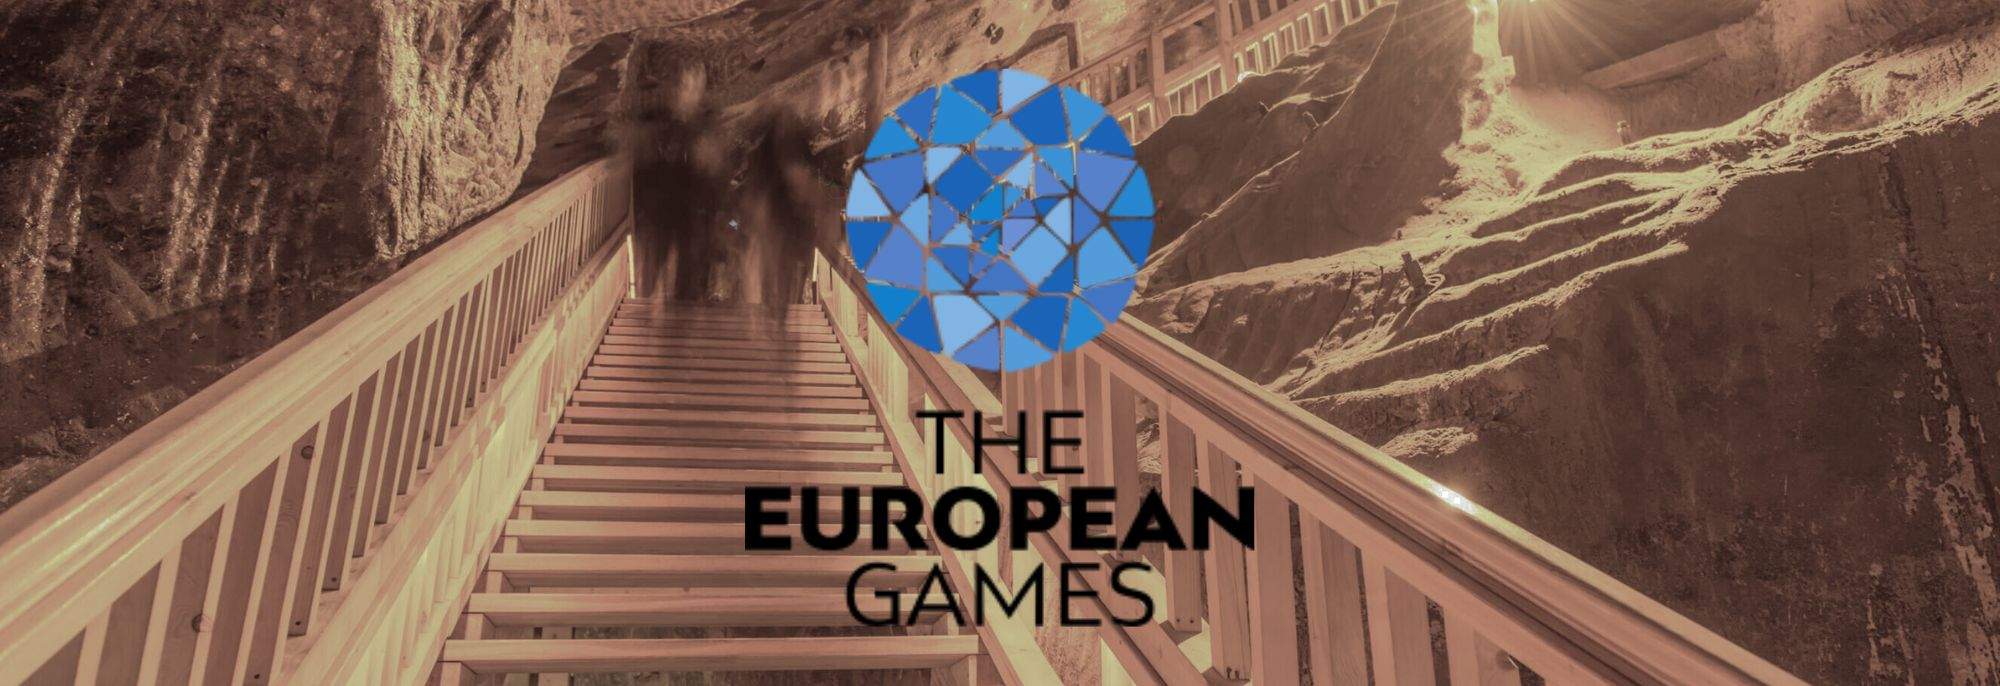 Luce Sotterranea: la Fiamma della Pace e le Medaglie dei Giochi Europei Riposano Profondamente nella Miniera di Sale di Wieliczka